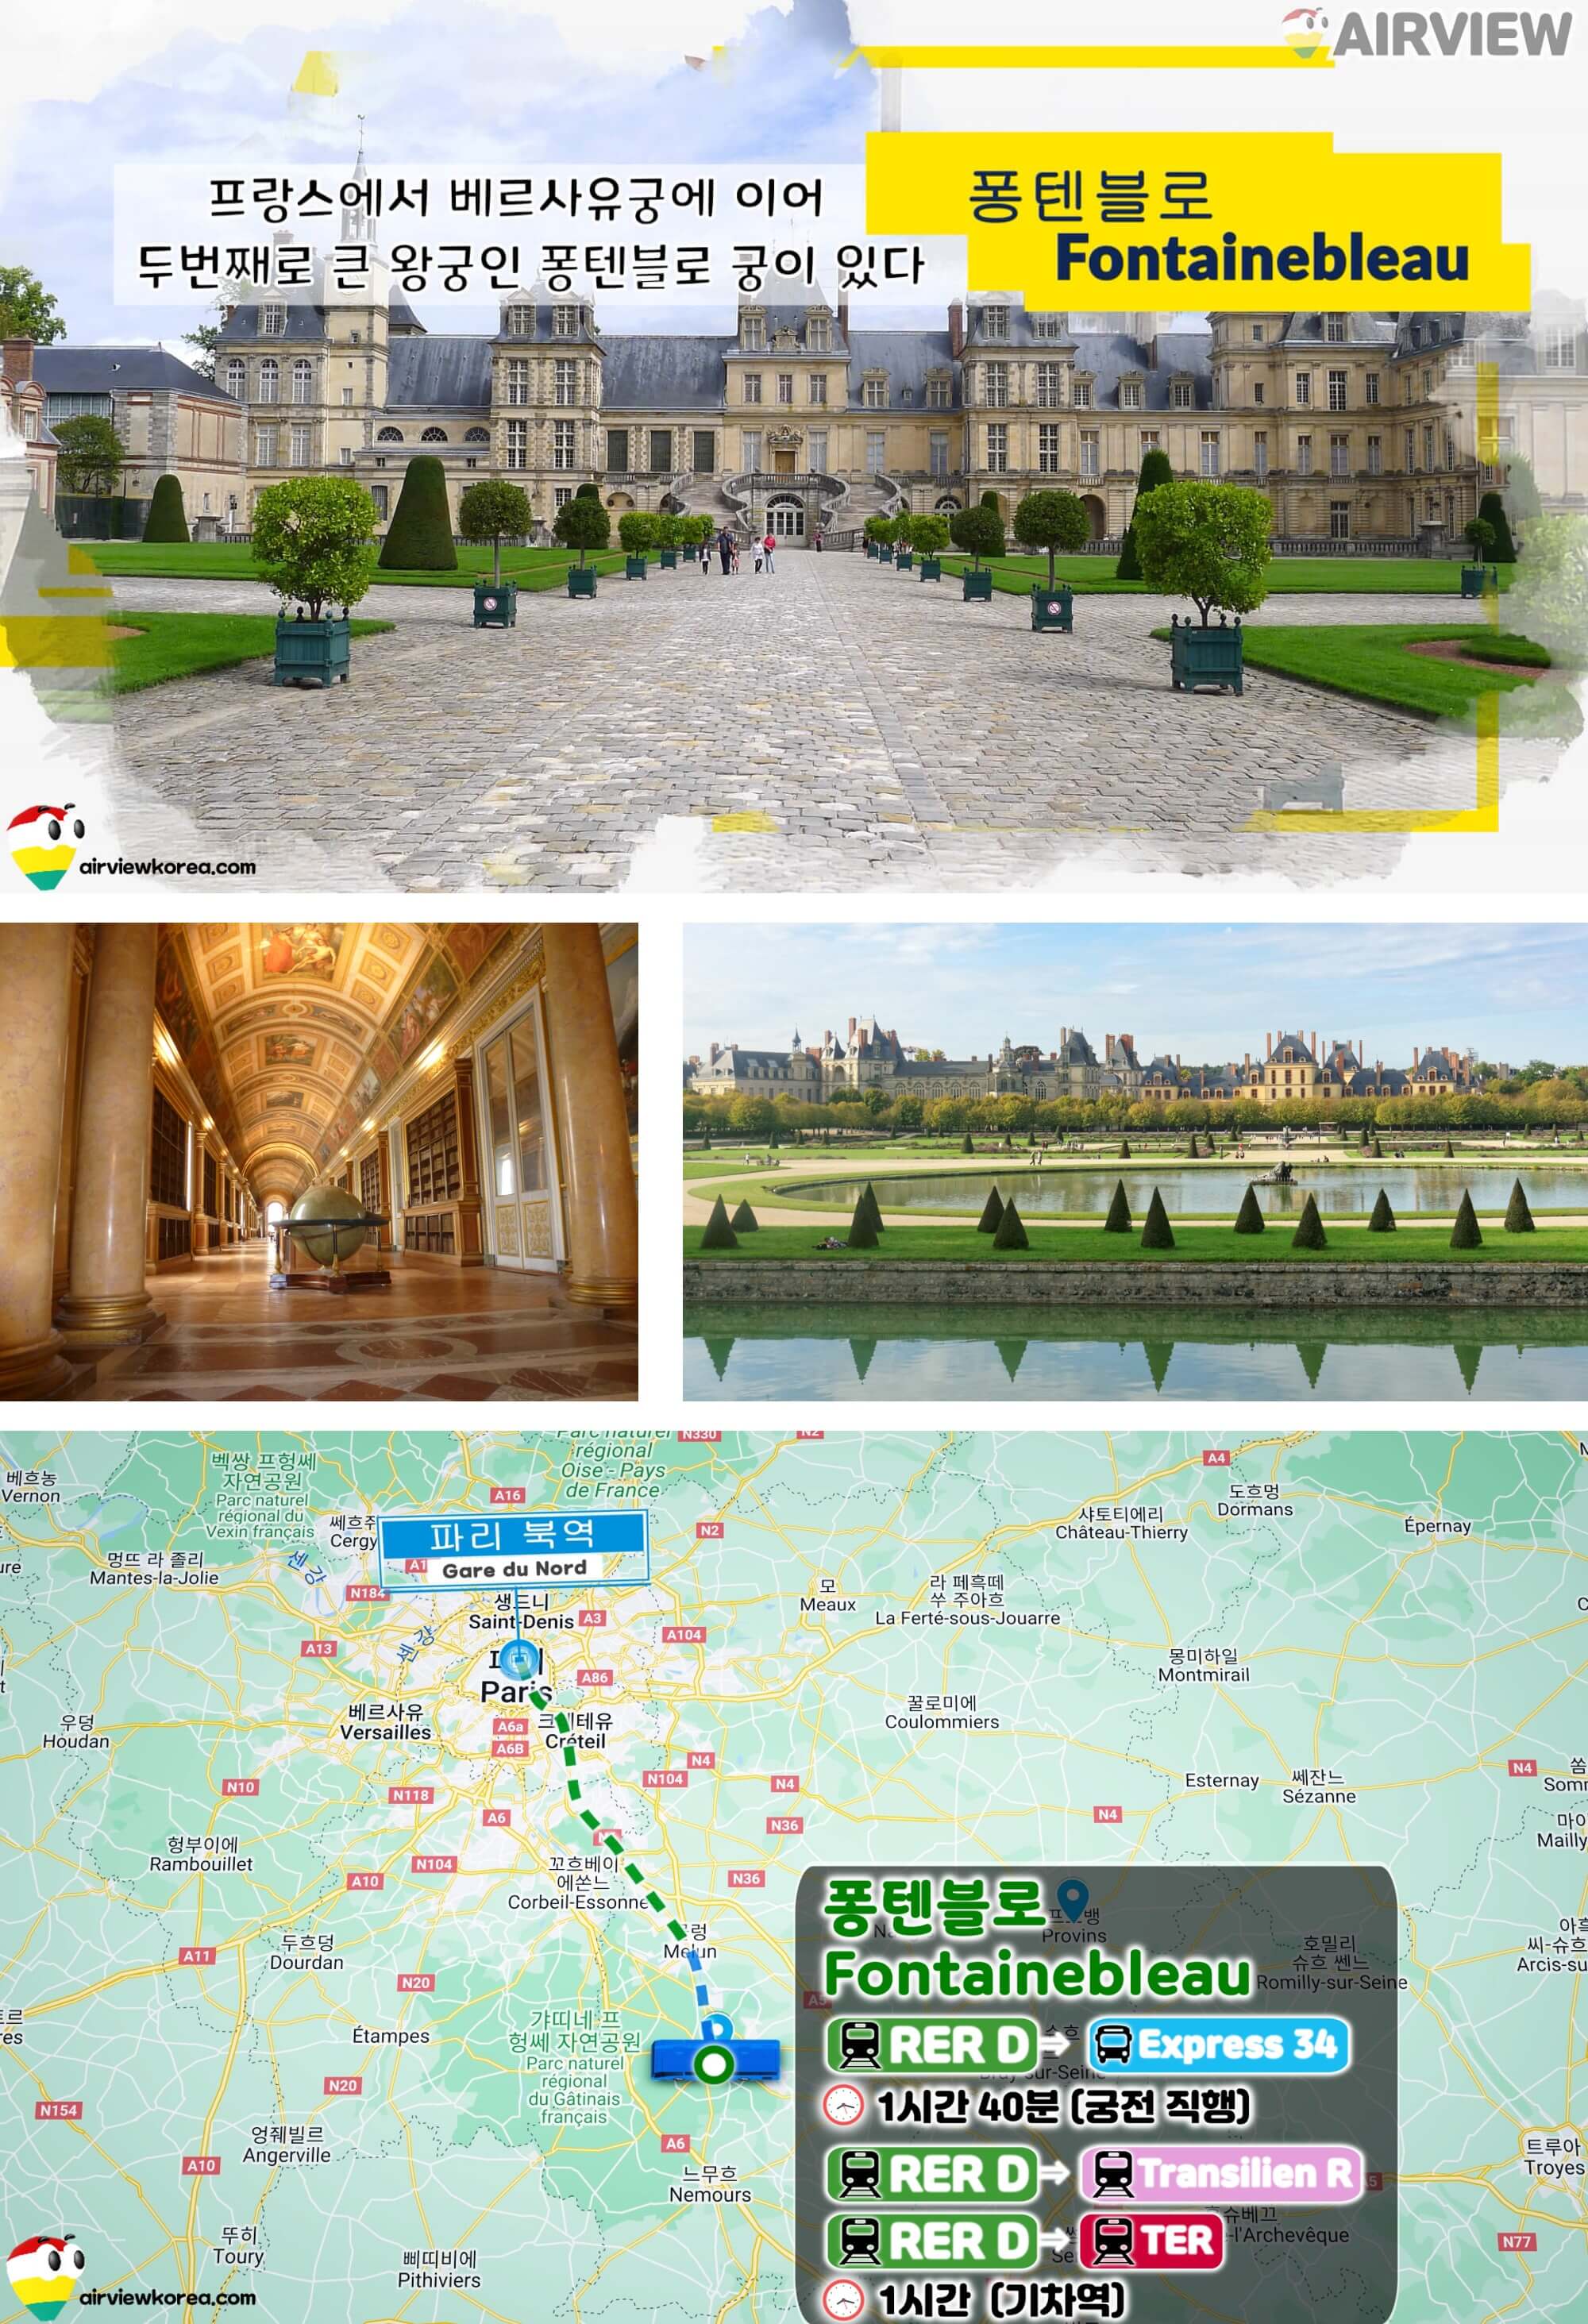 프랑스에서 두번째 큰 왕궁이 있는 퐁텐블로의 풍경과 가는 길을 보여주는 지도